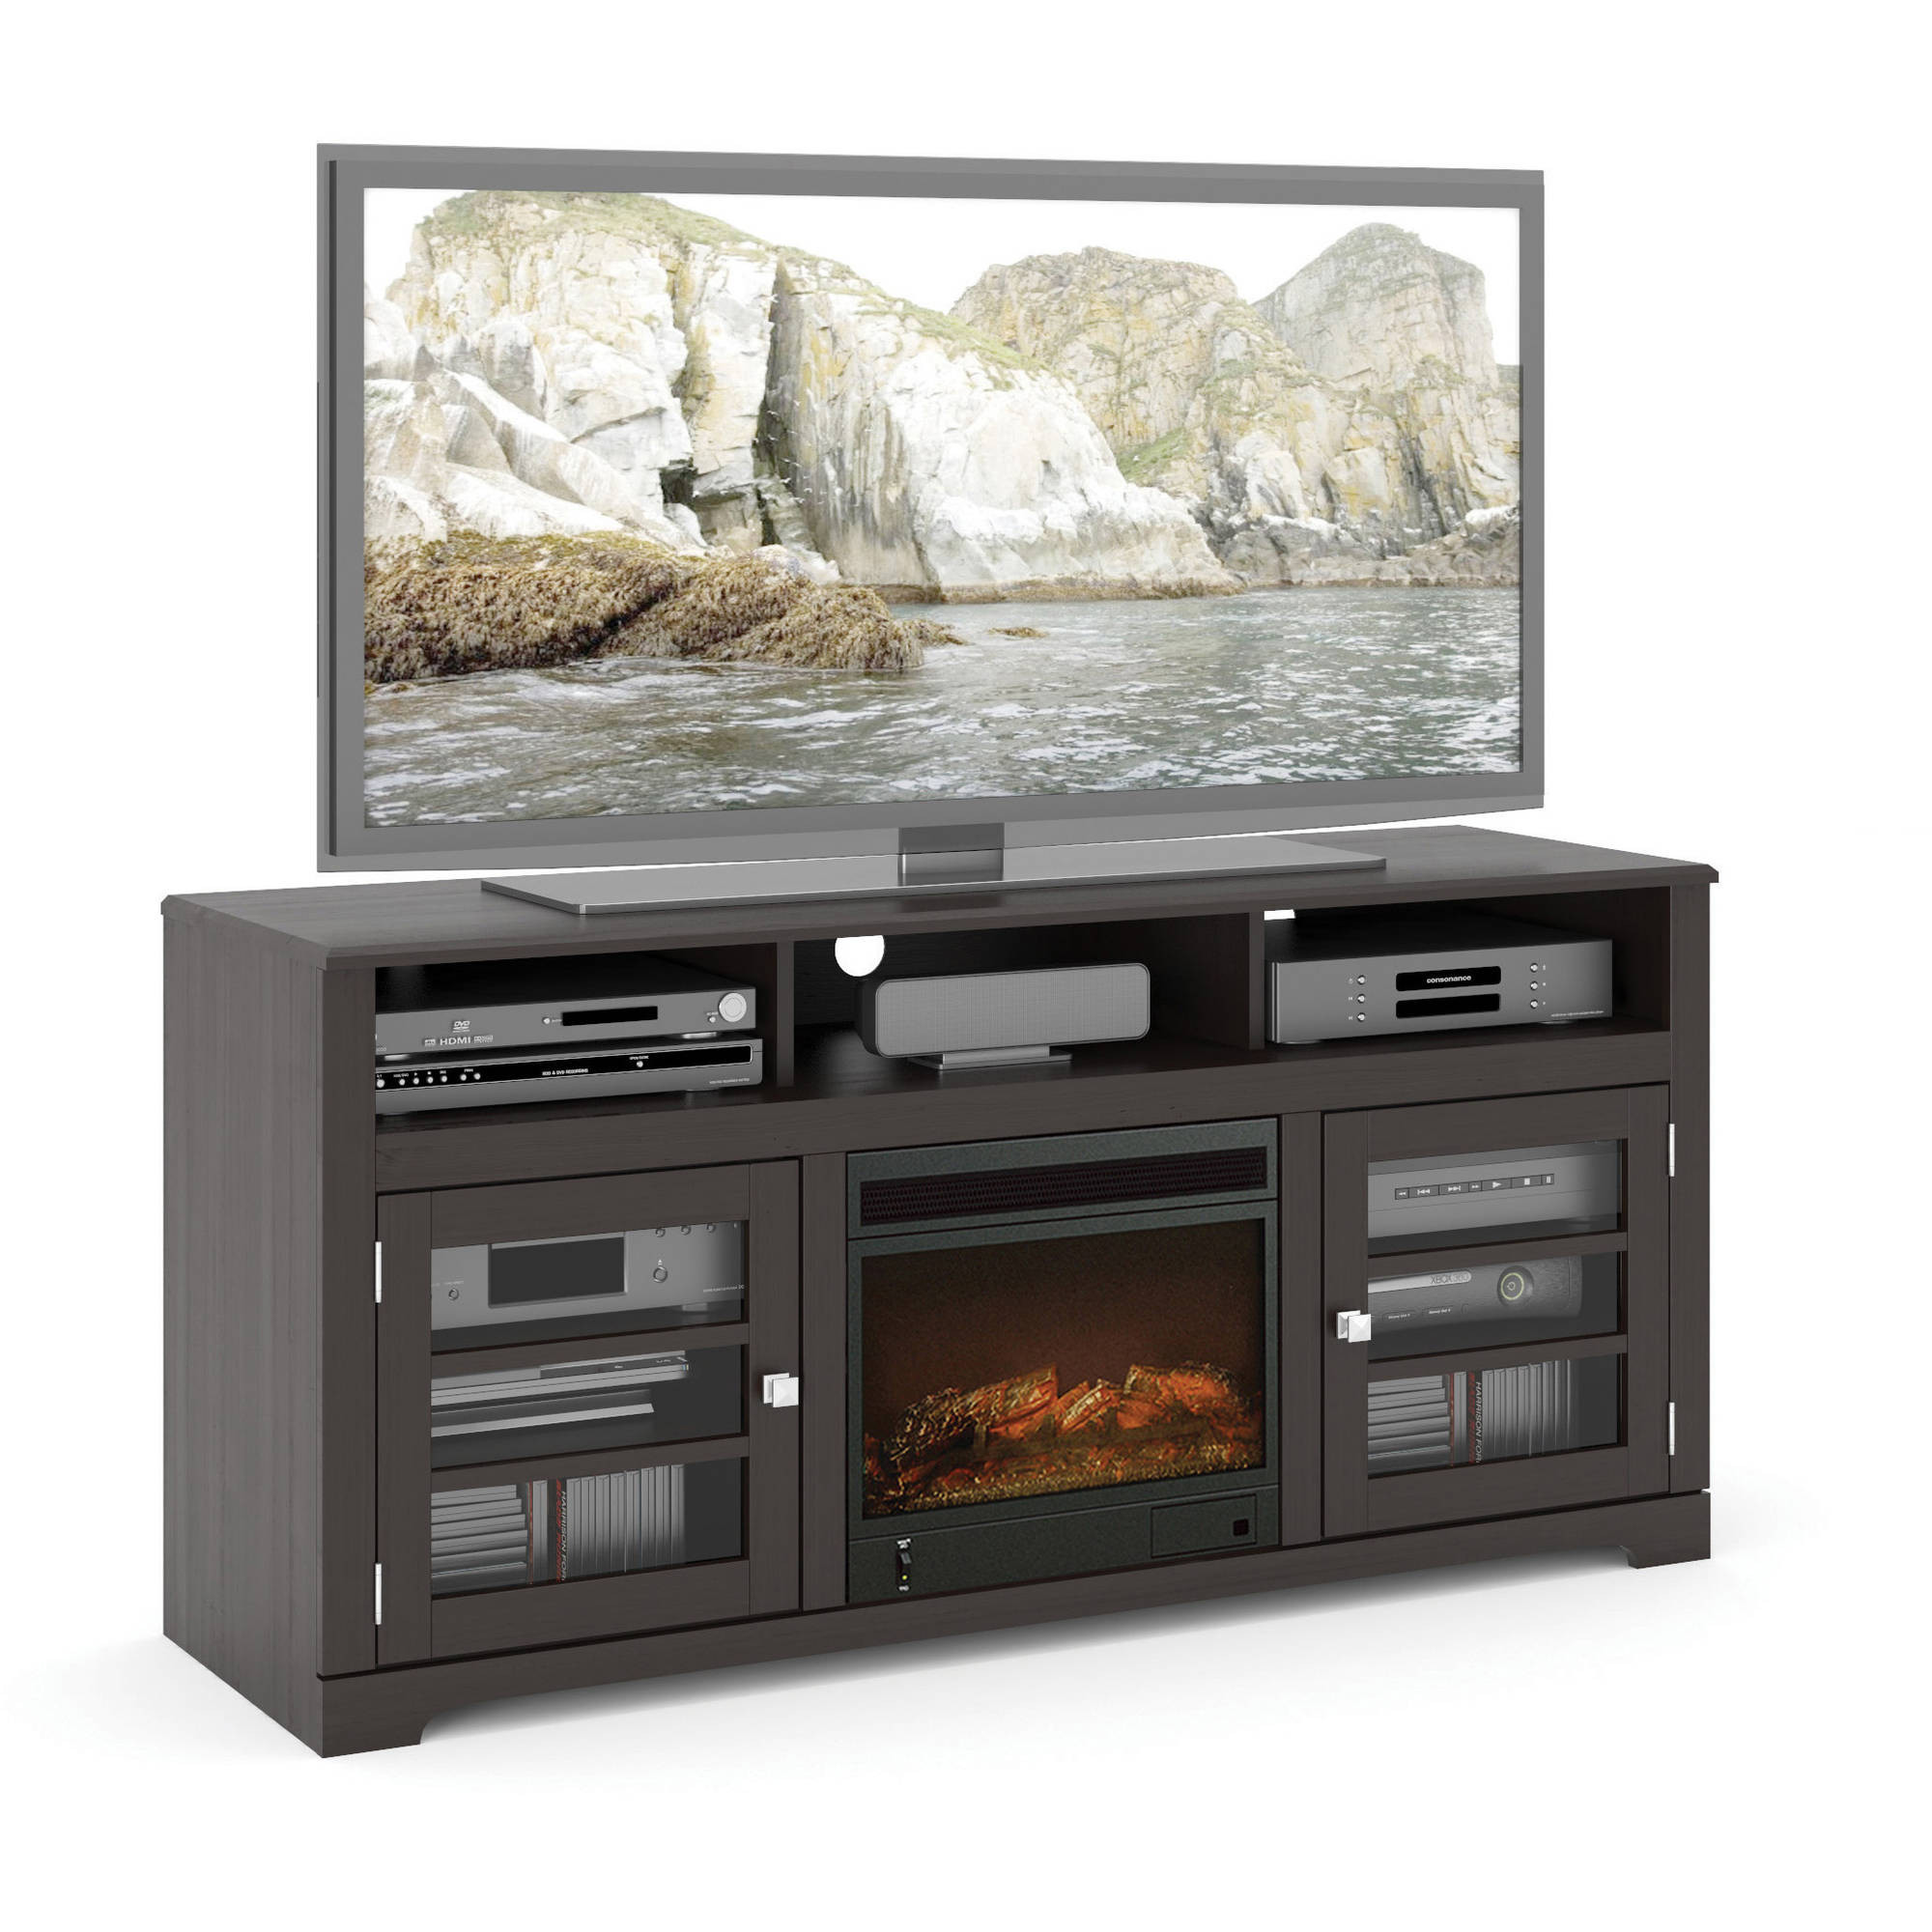 Best ideas about Walmart Fireplace Tv Stands
. Save or Pin Electric Fireplace TV Stands Walmart Now.